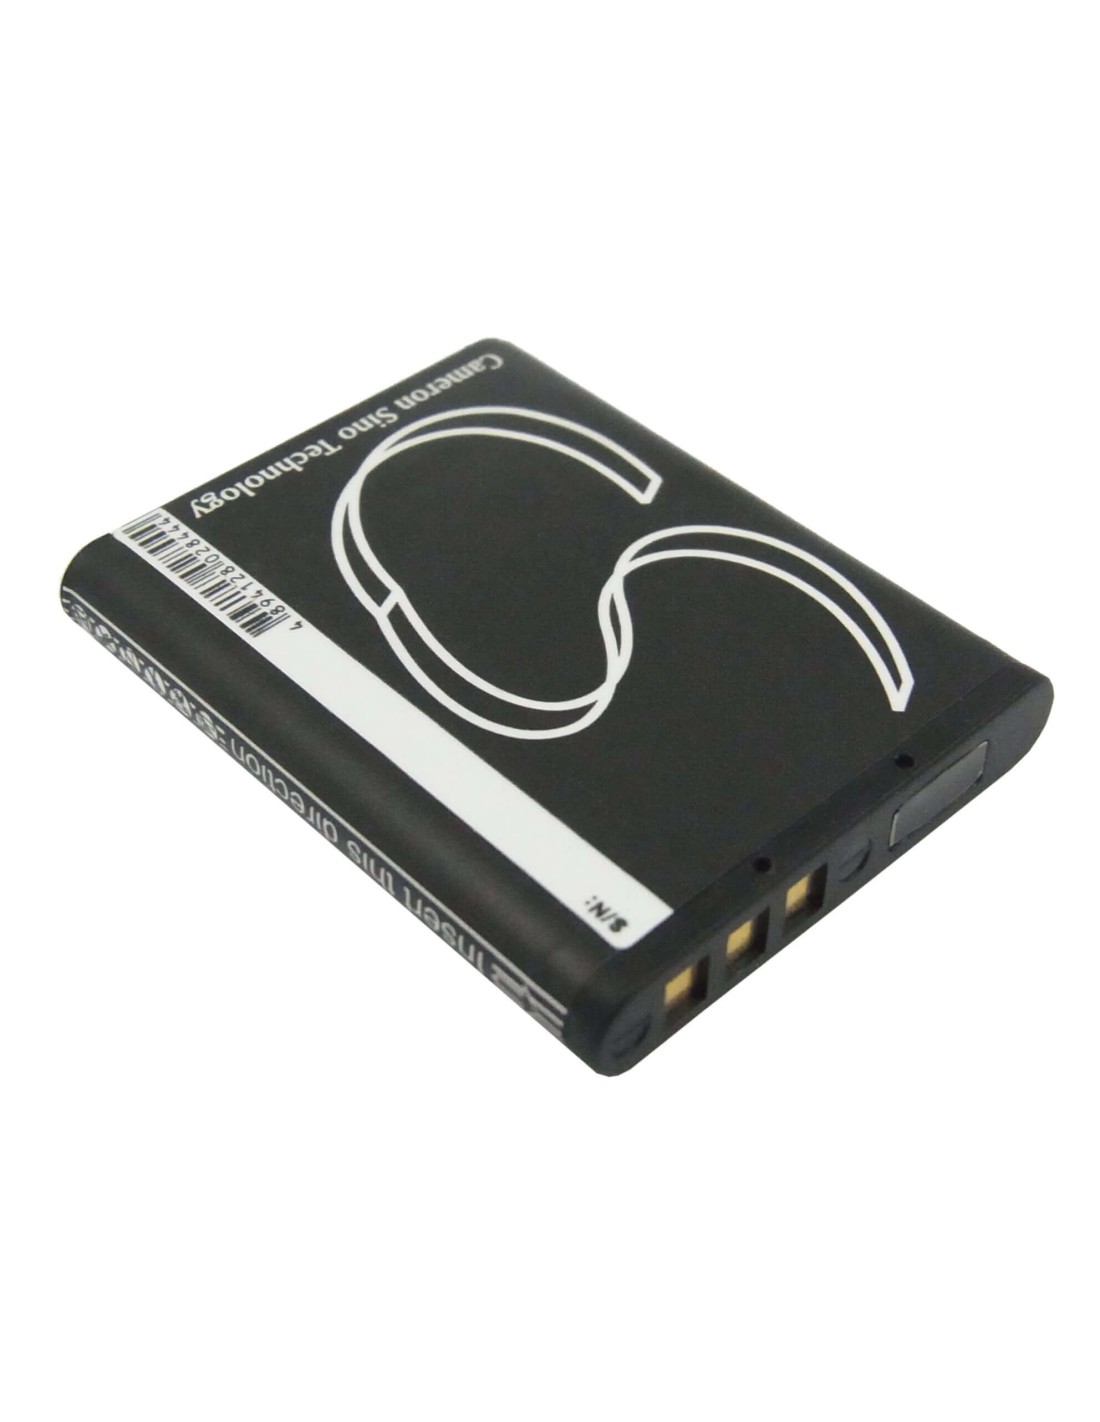 Battery for Pentax Optio H90, Optio P70, 3.7V, 740mAh - 2.74Wh